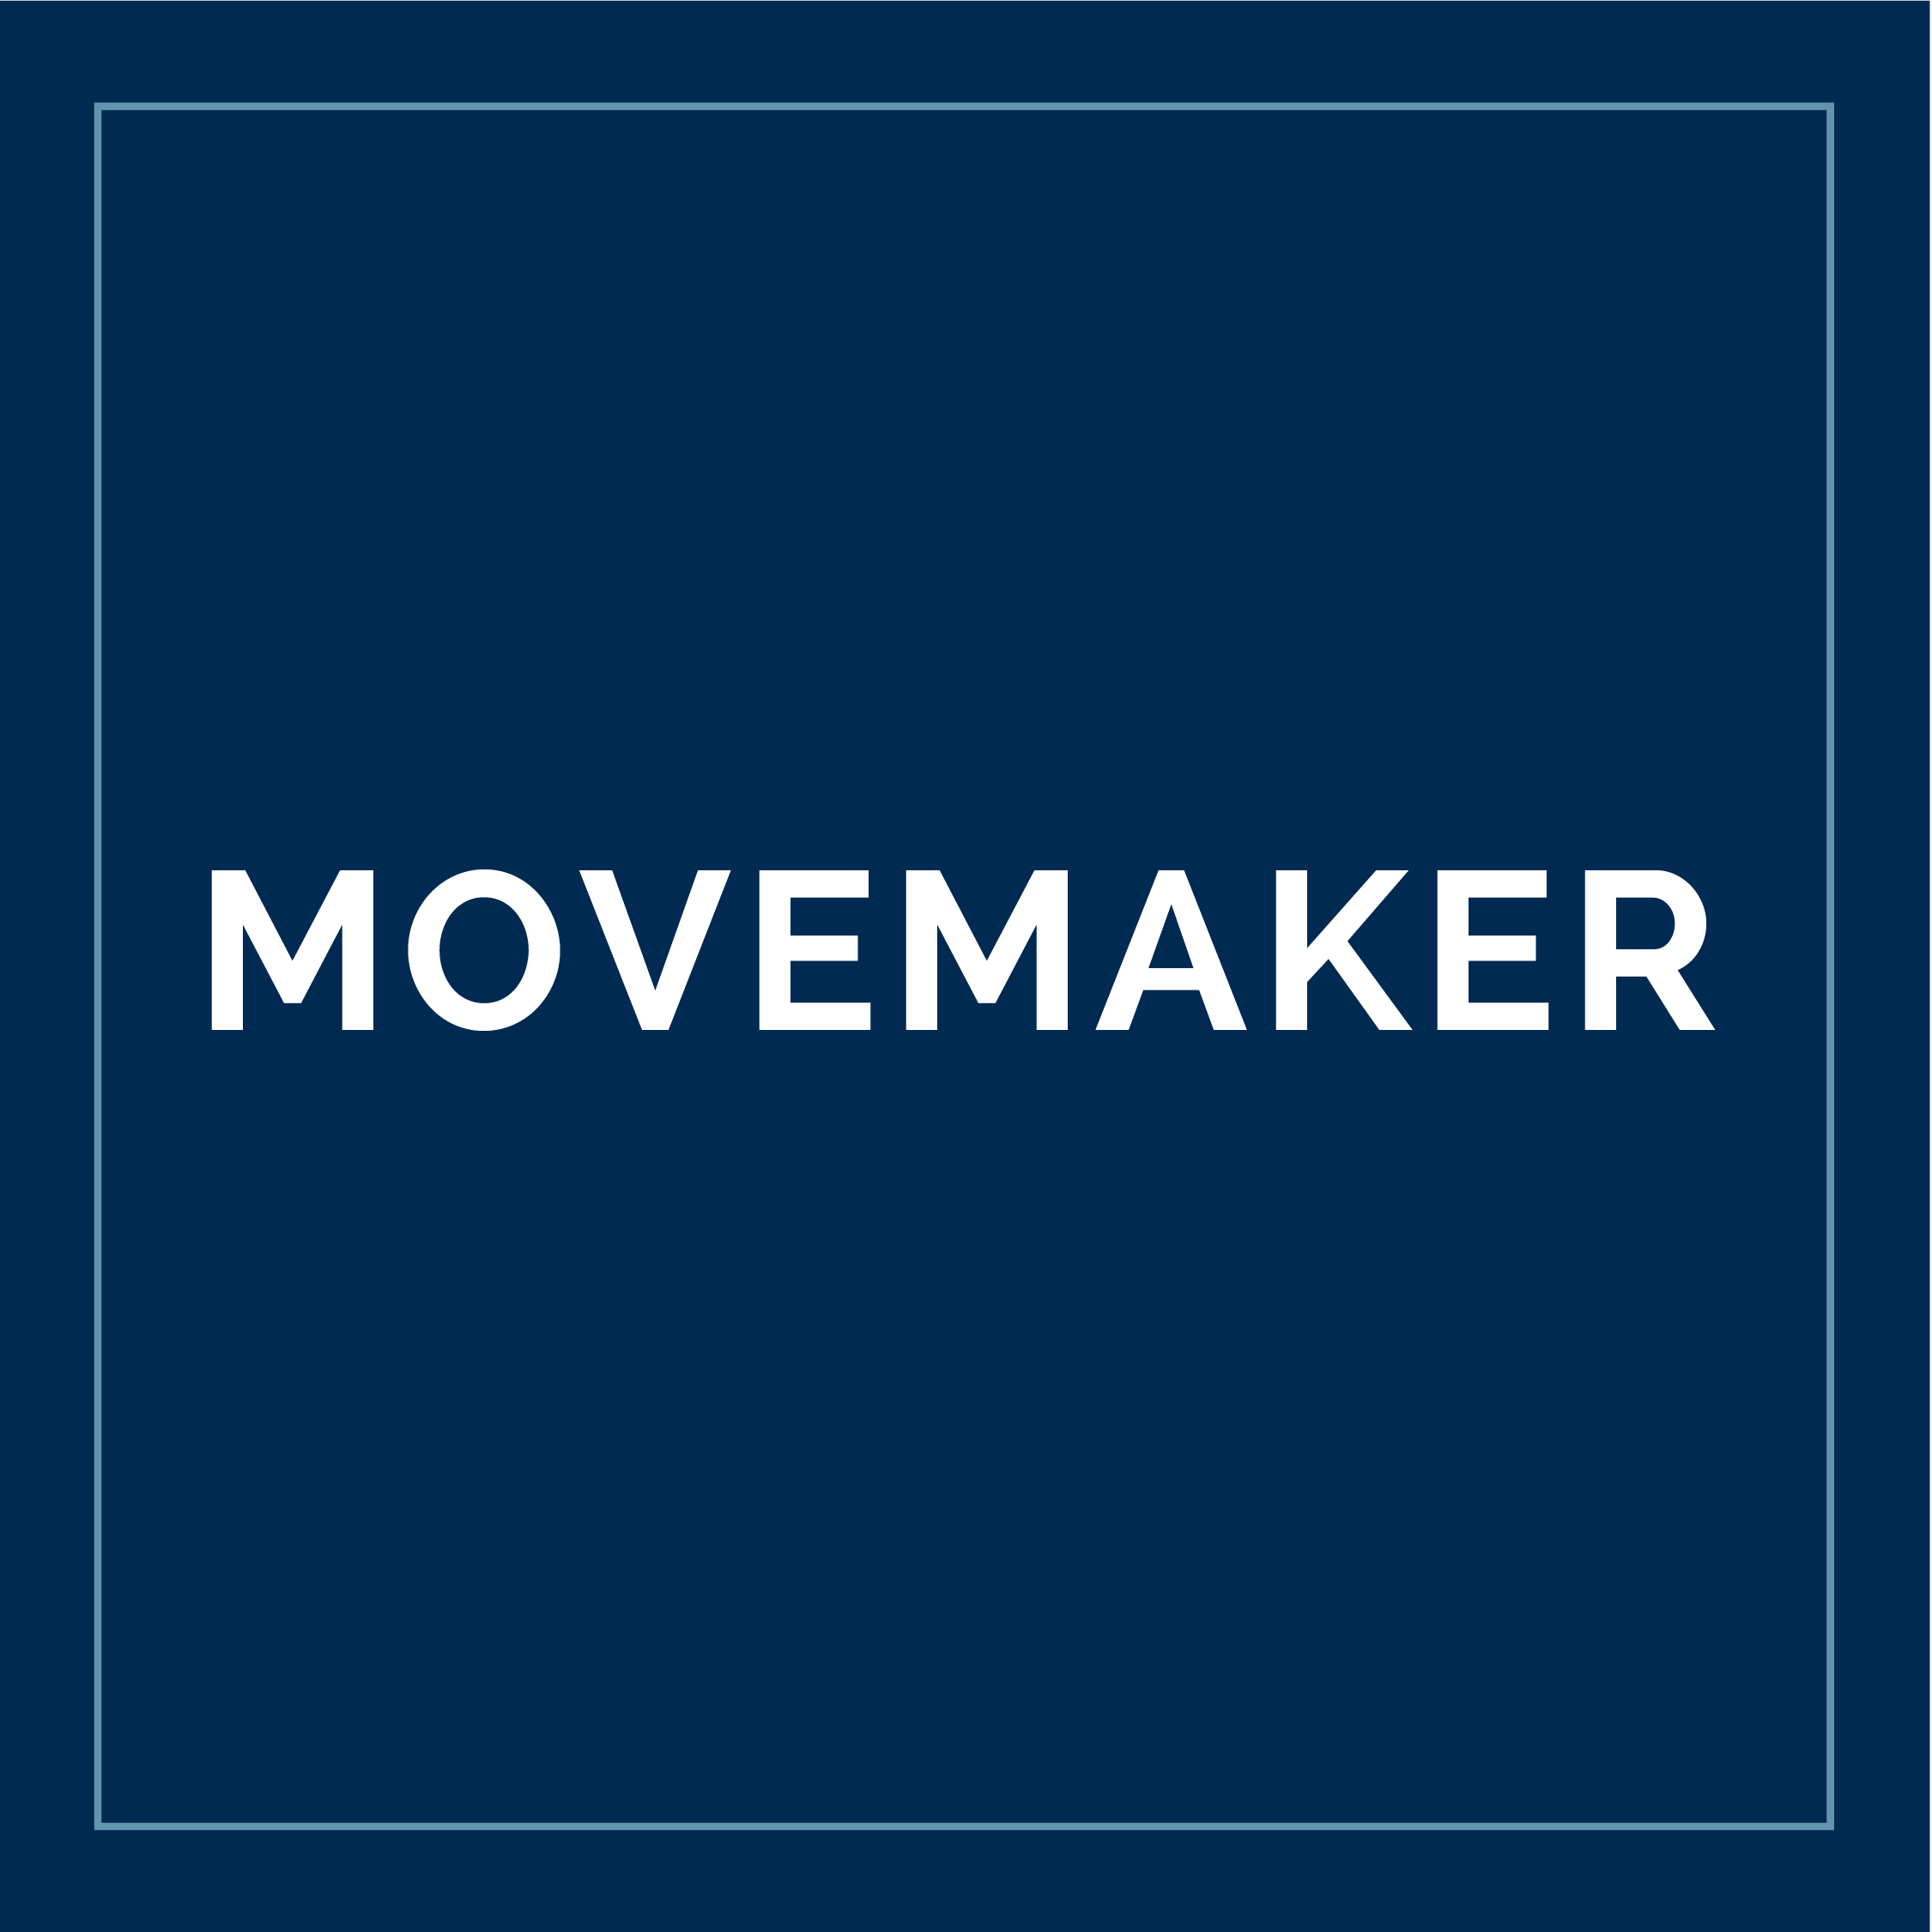 Movemaker Lockup - David Wilson Homes